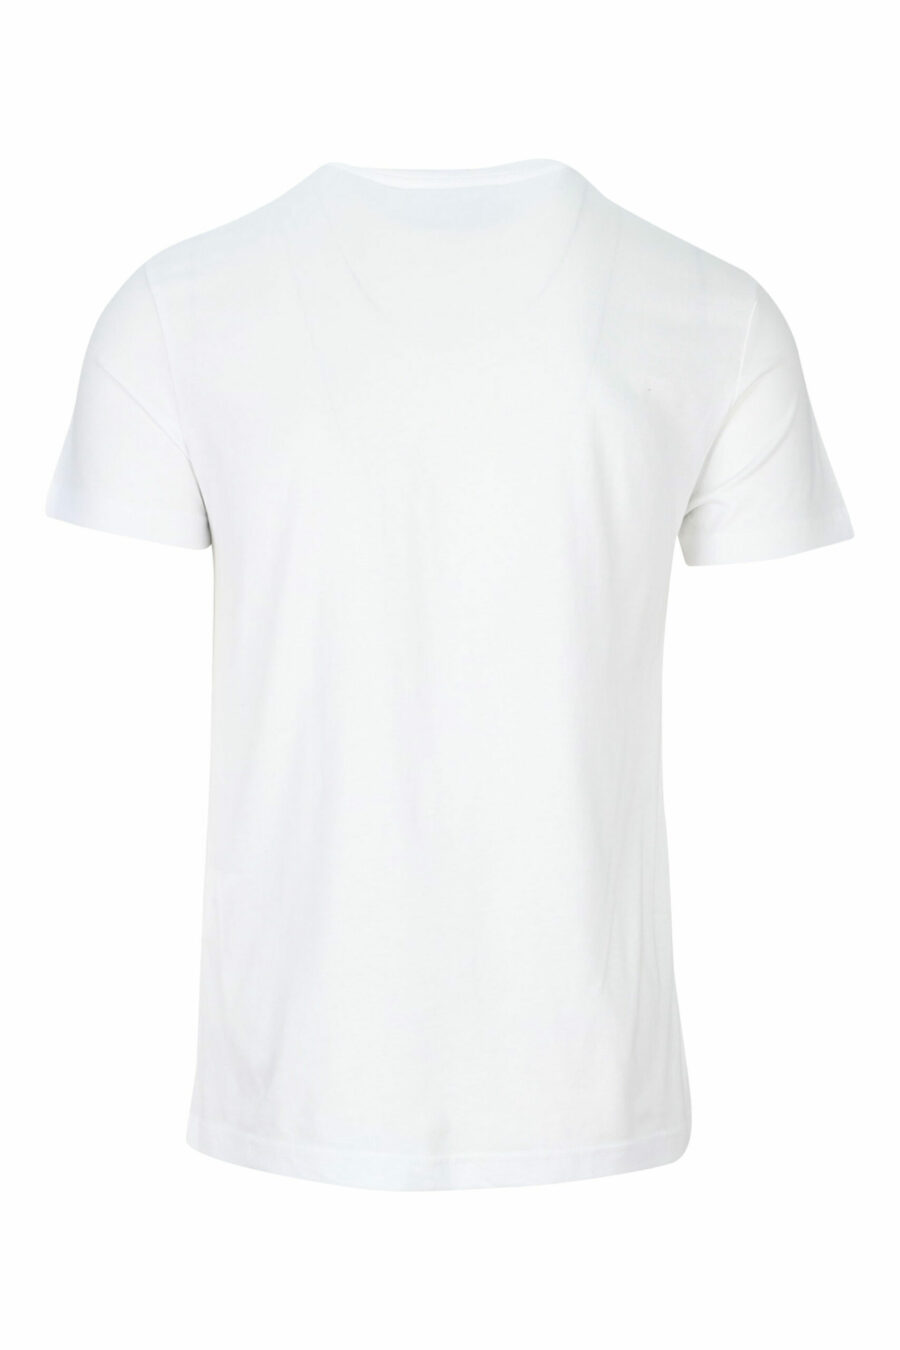 Weißes T-Shirt mit kreisförmigem Mini-Logo in Gold - 8052019468397 1 skaliert